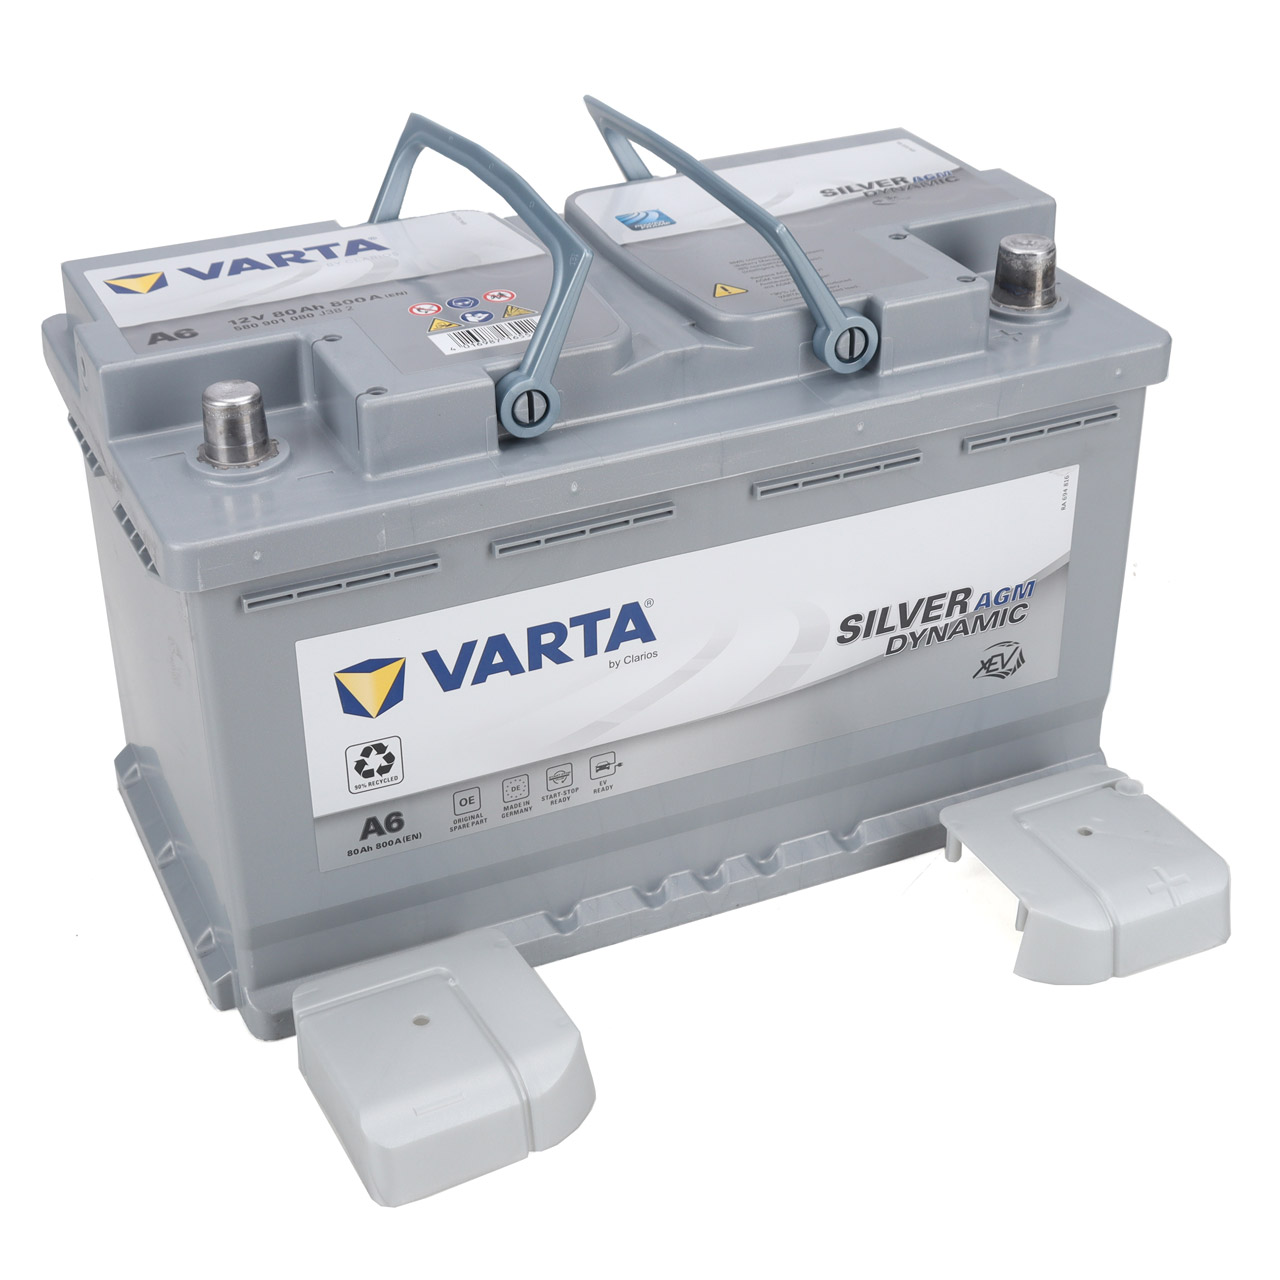 VARTA Starterbatterien / Autobatterien - 580901080J382 